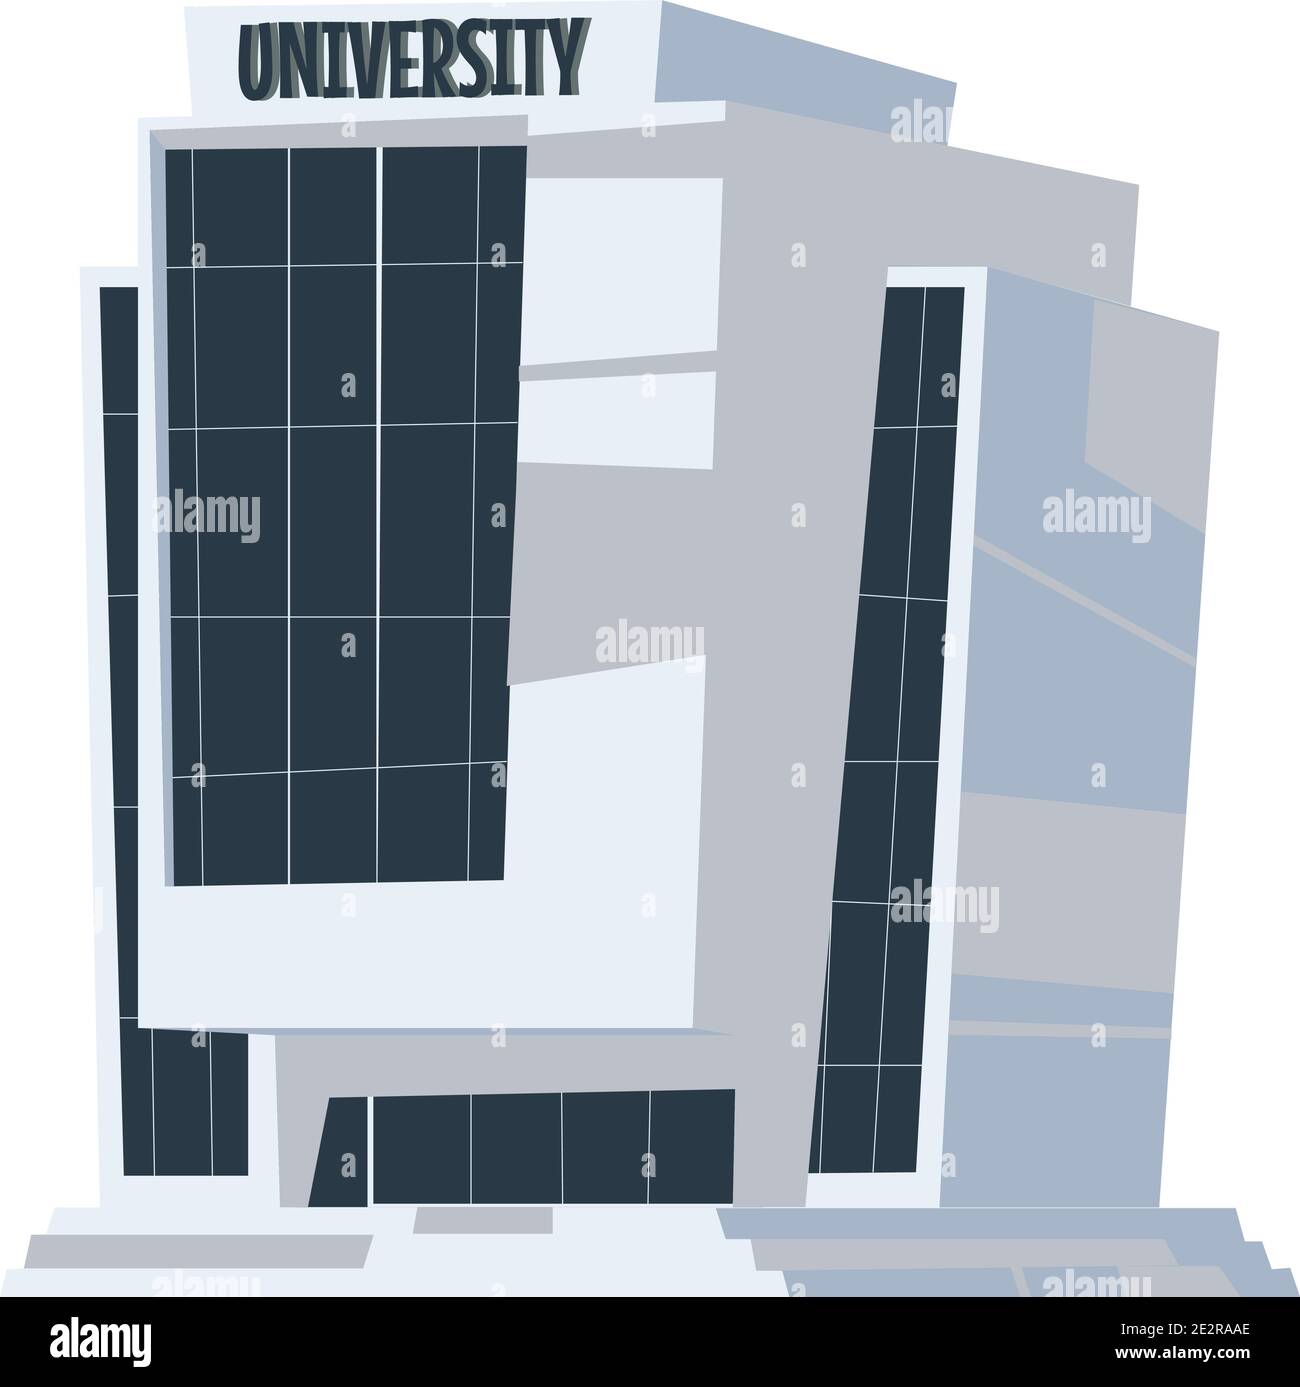 Illustration isolée de vecteur de dessin animé de bâtiment d'école, d'université ou d'université Illustration de Vecteur